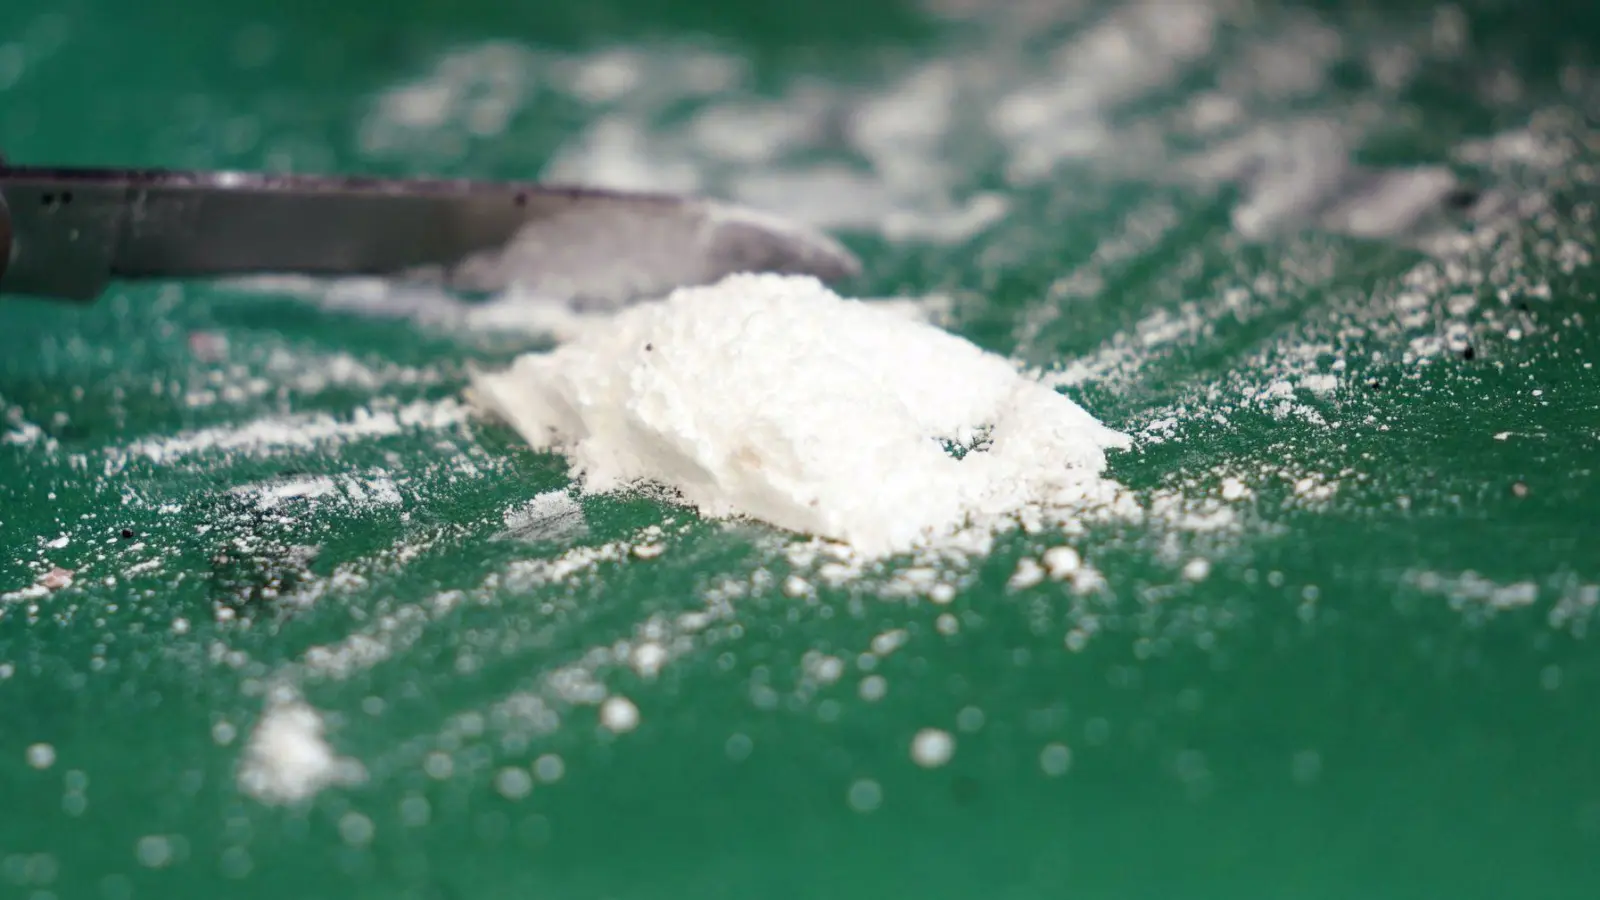 Am Ostseestrand in Schleswig-Holstein wurde jetzt ein Päckchen mit 20 Kilogramm Kokain angespült. (Foto: Marcus Brandt/dpa)